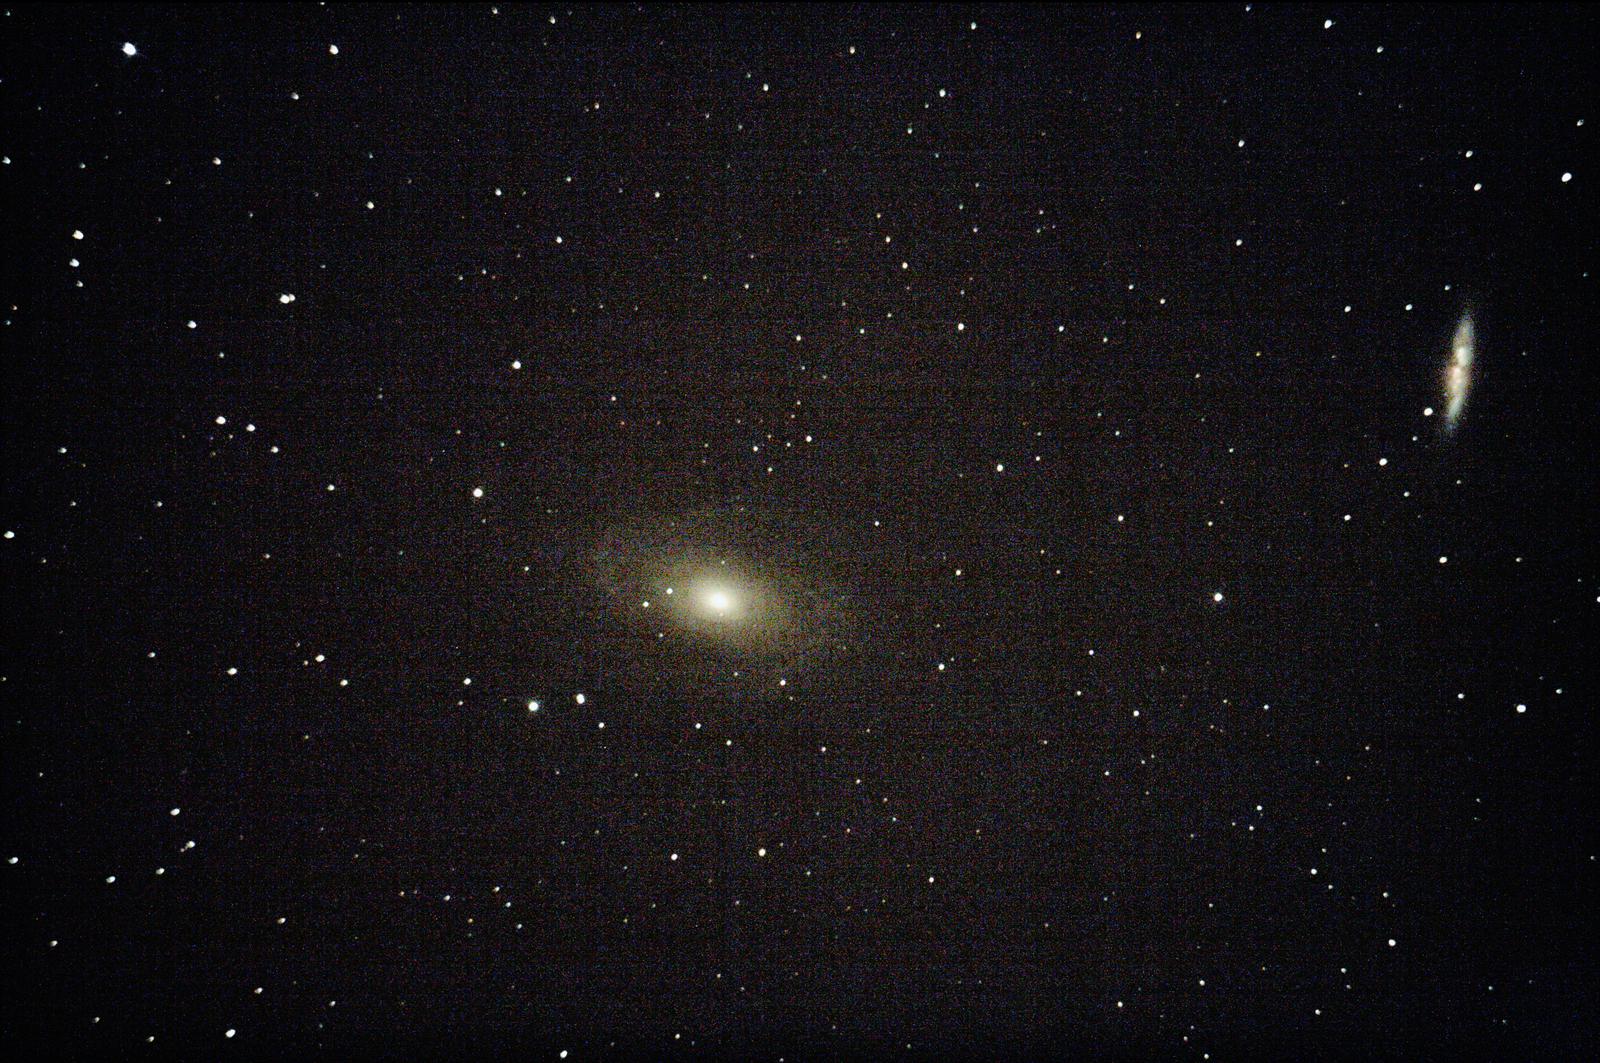 M81 et M82 : galaxie de Bode et galaxie du cigare - à Saint-Martin (32) - 29 juillet 2017 - Skywatcher 200/1000 + Canon 1000D défiltré - 1 photo 30sec ISO1600 + 1 photo 120 sec ISO1600 Ouverture 5 (donnée par le téléscope) + (3 Darks 120sec ISO800) + (2 offsets 1/4000 ISO 800)